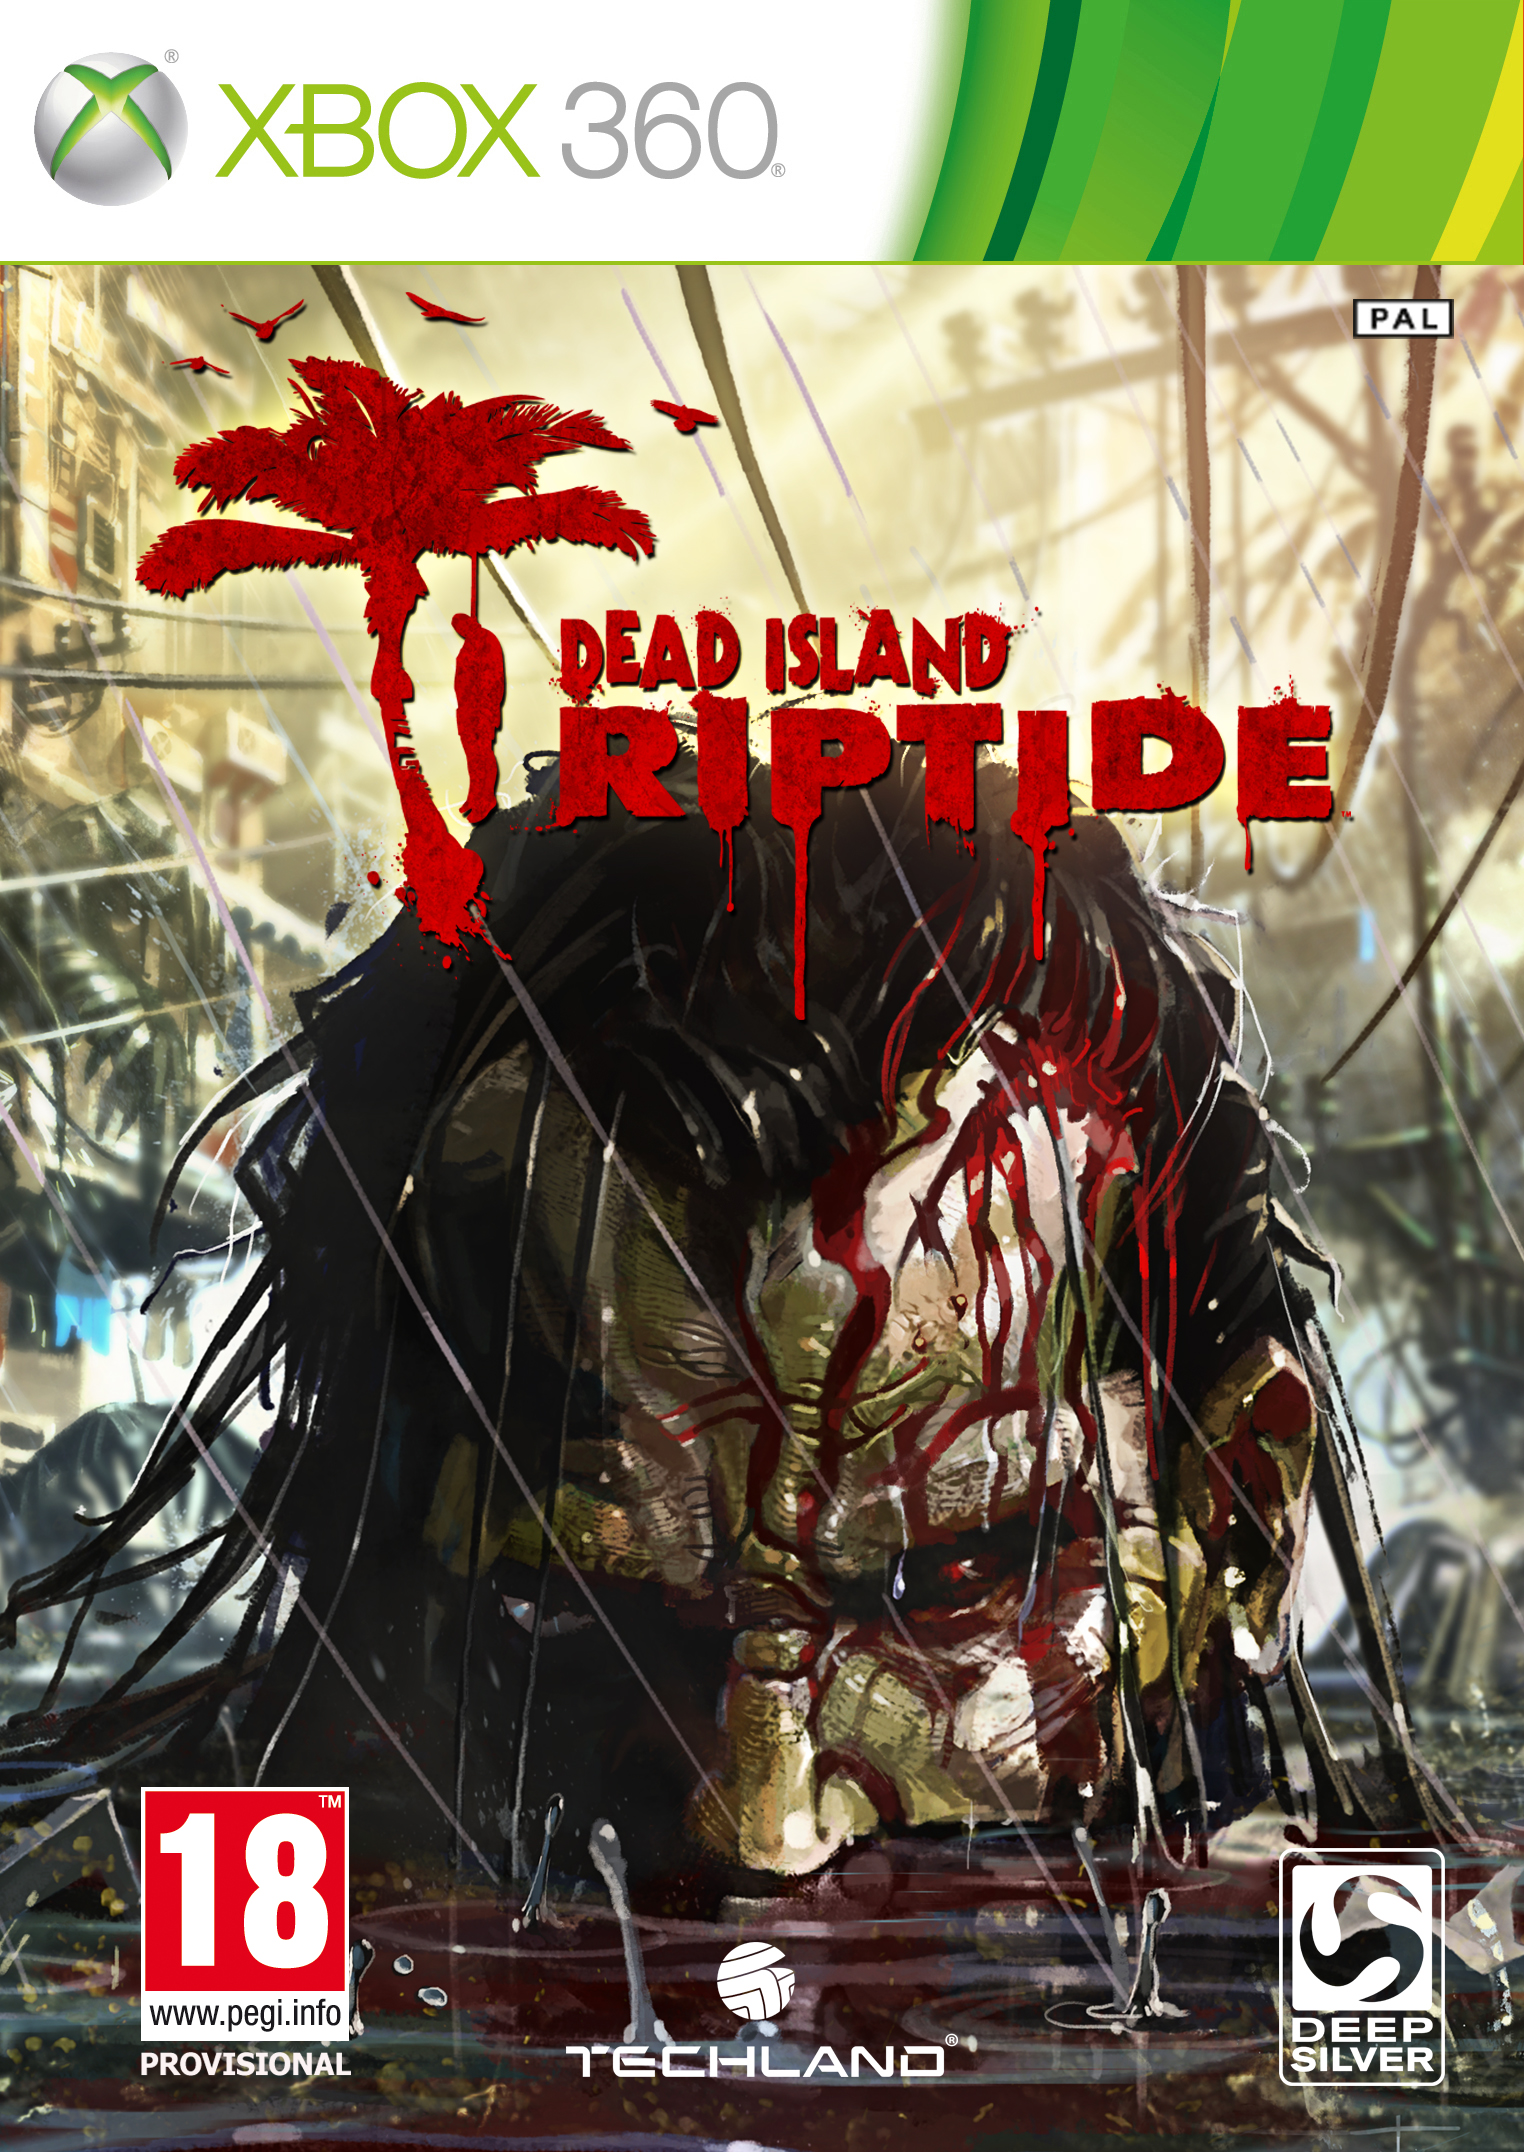 XBOX 360 - Dead Island: Riptide